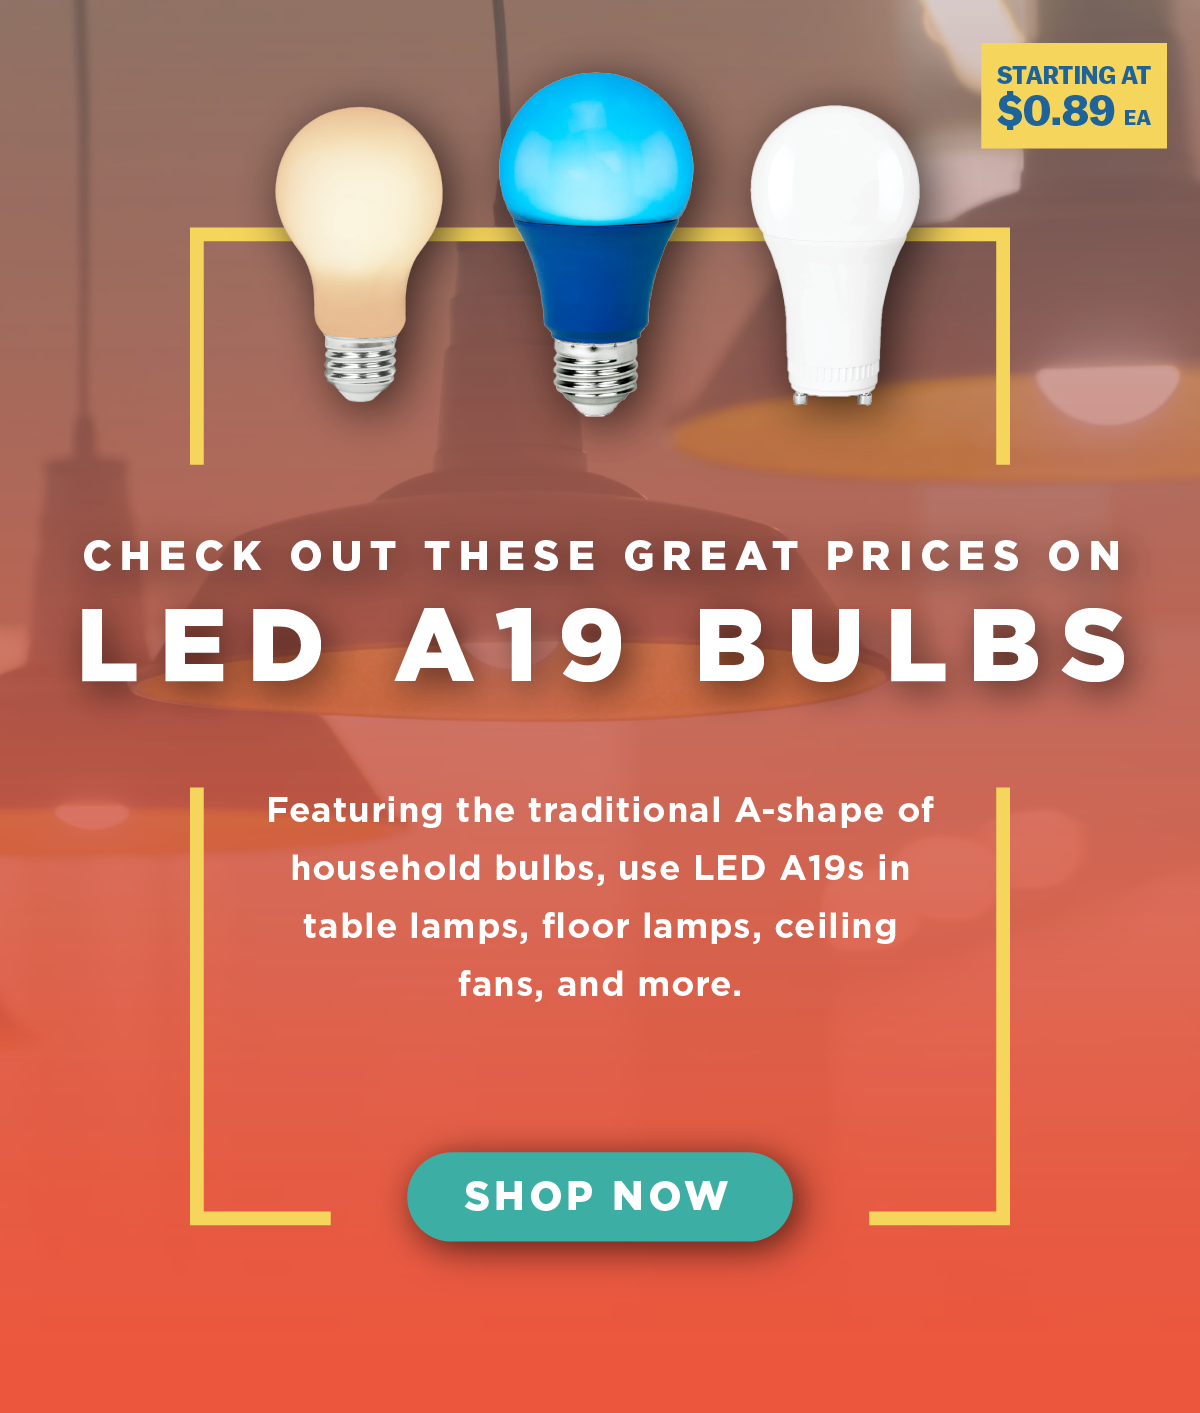 10% Off LED A19 Bulbs